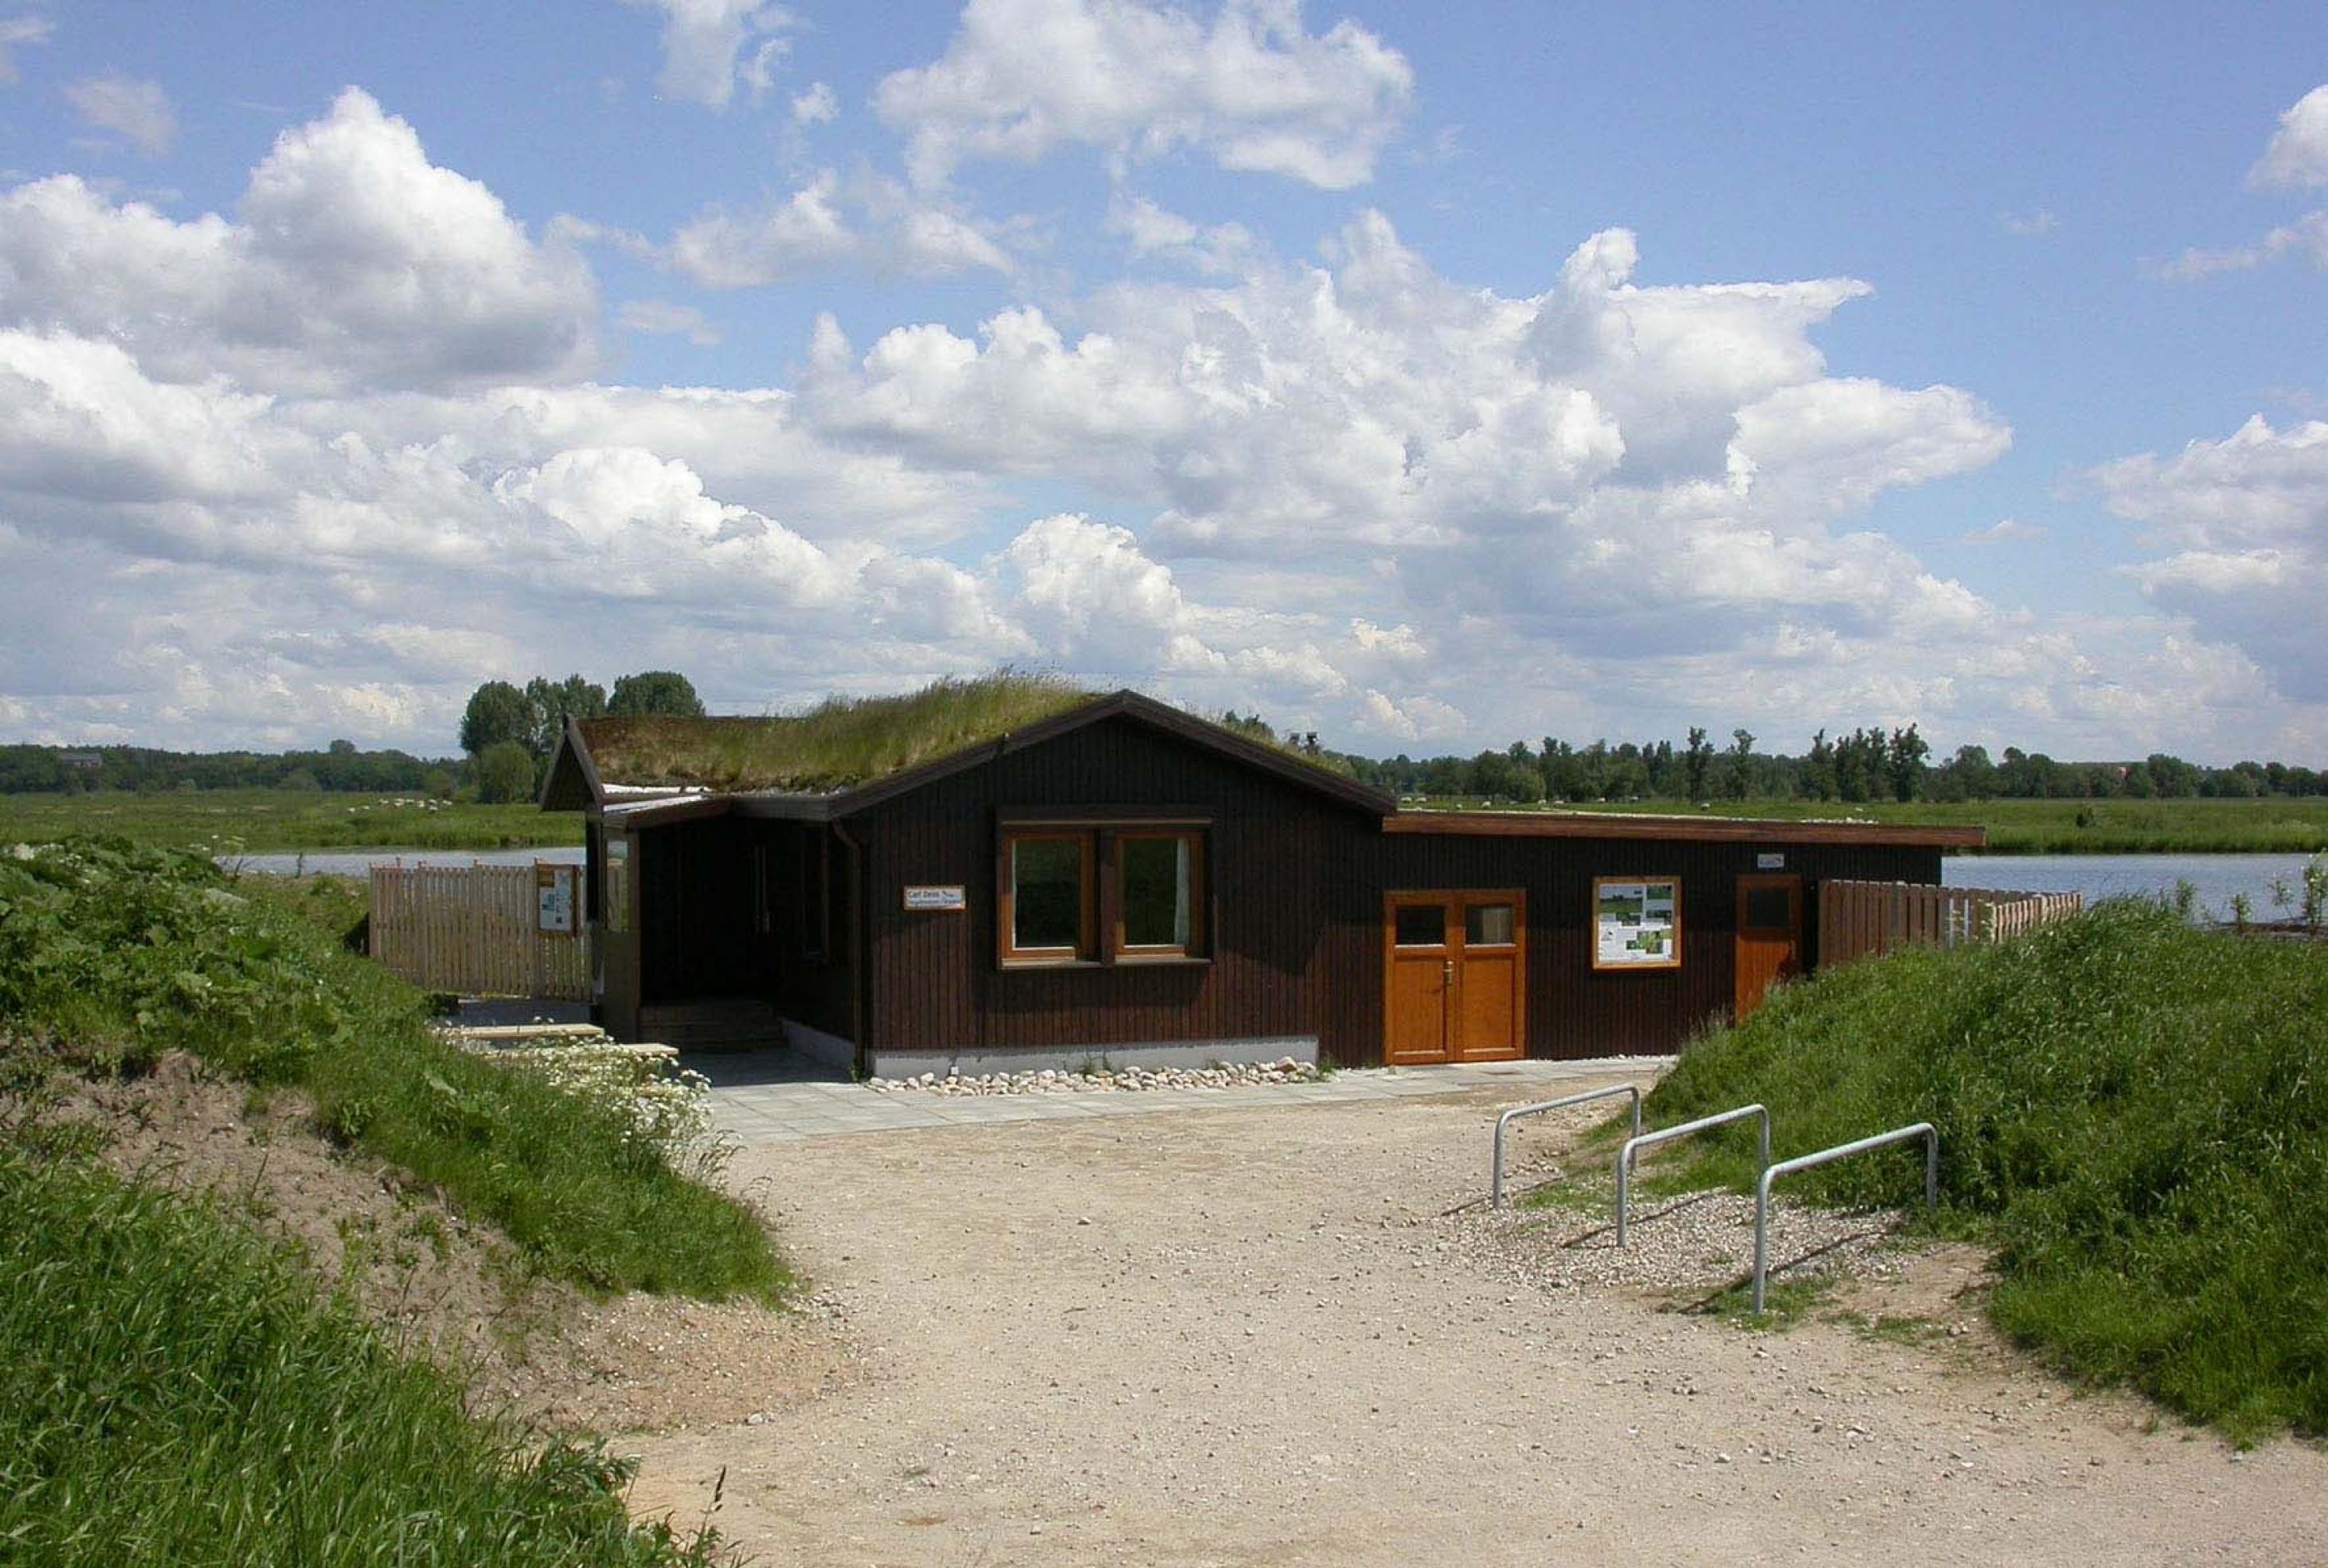 Die Carl-Zeiss-Vogelstation liegt mitten im Naturschutzgebiet Wedeler Marsch, an einem See, der durch den Deichbau entstanden sind. Hier kann man ganzjährig vor allem Wat- und Wasservögel beobachten.